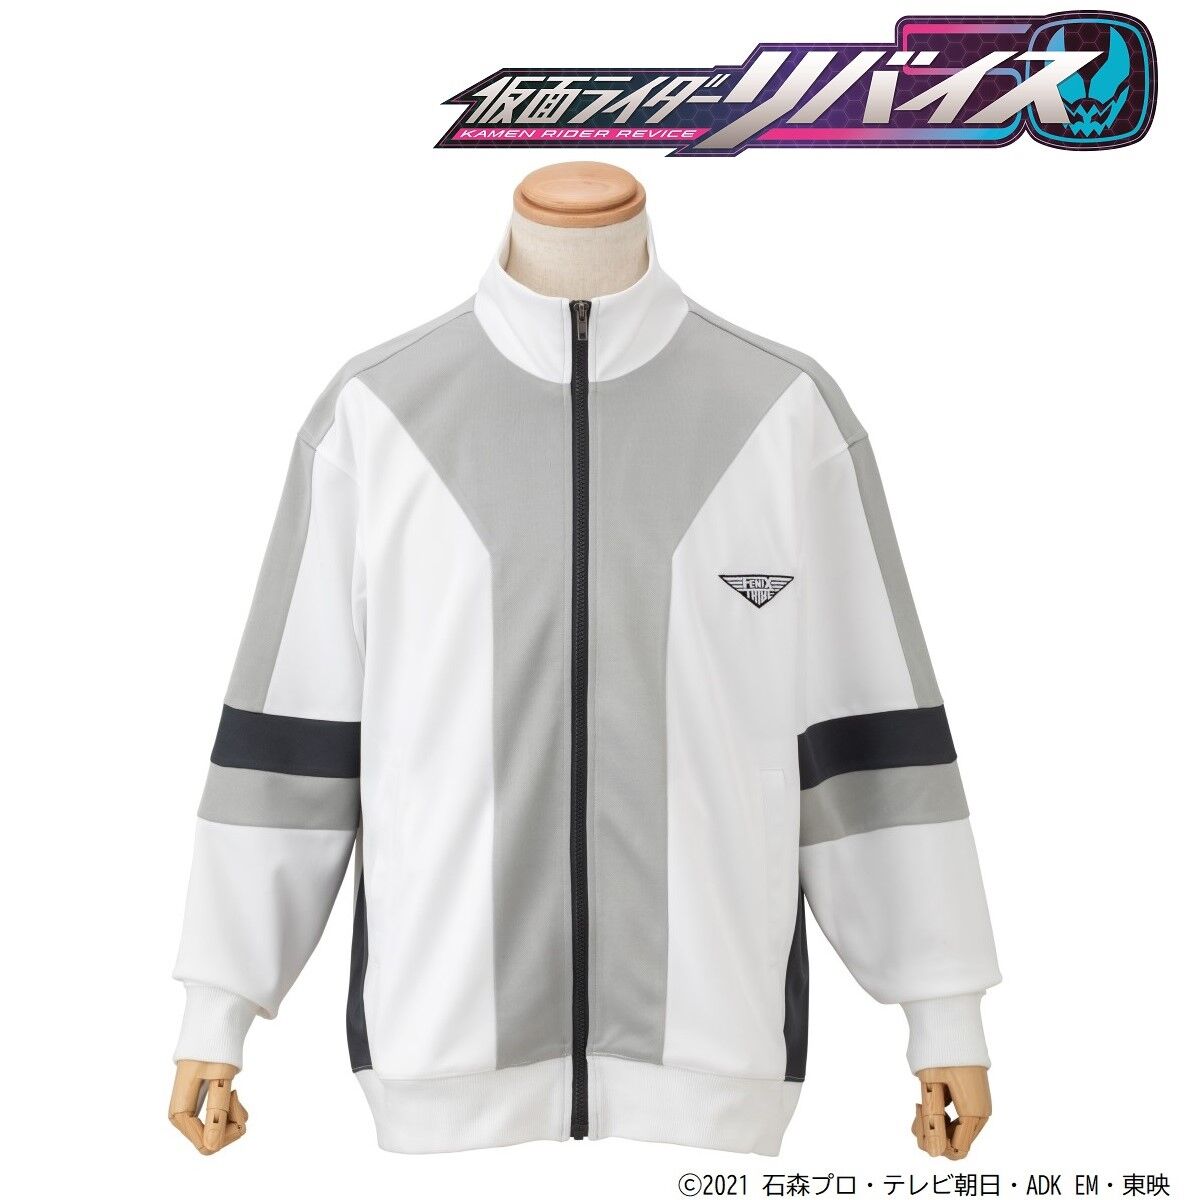 Kamen Rider Revice Fenix Sweatsuit Jacket 